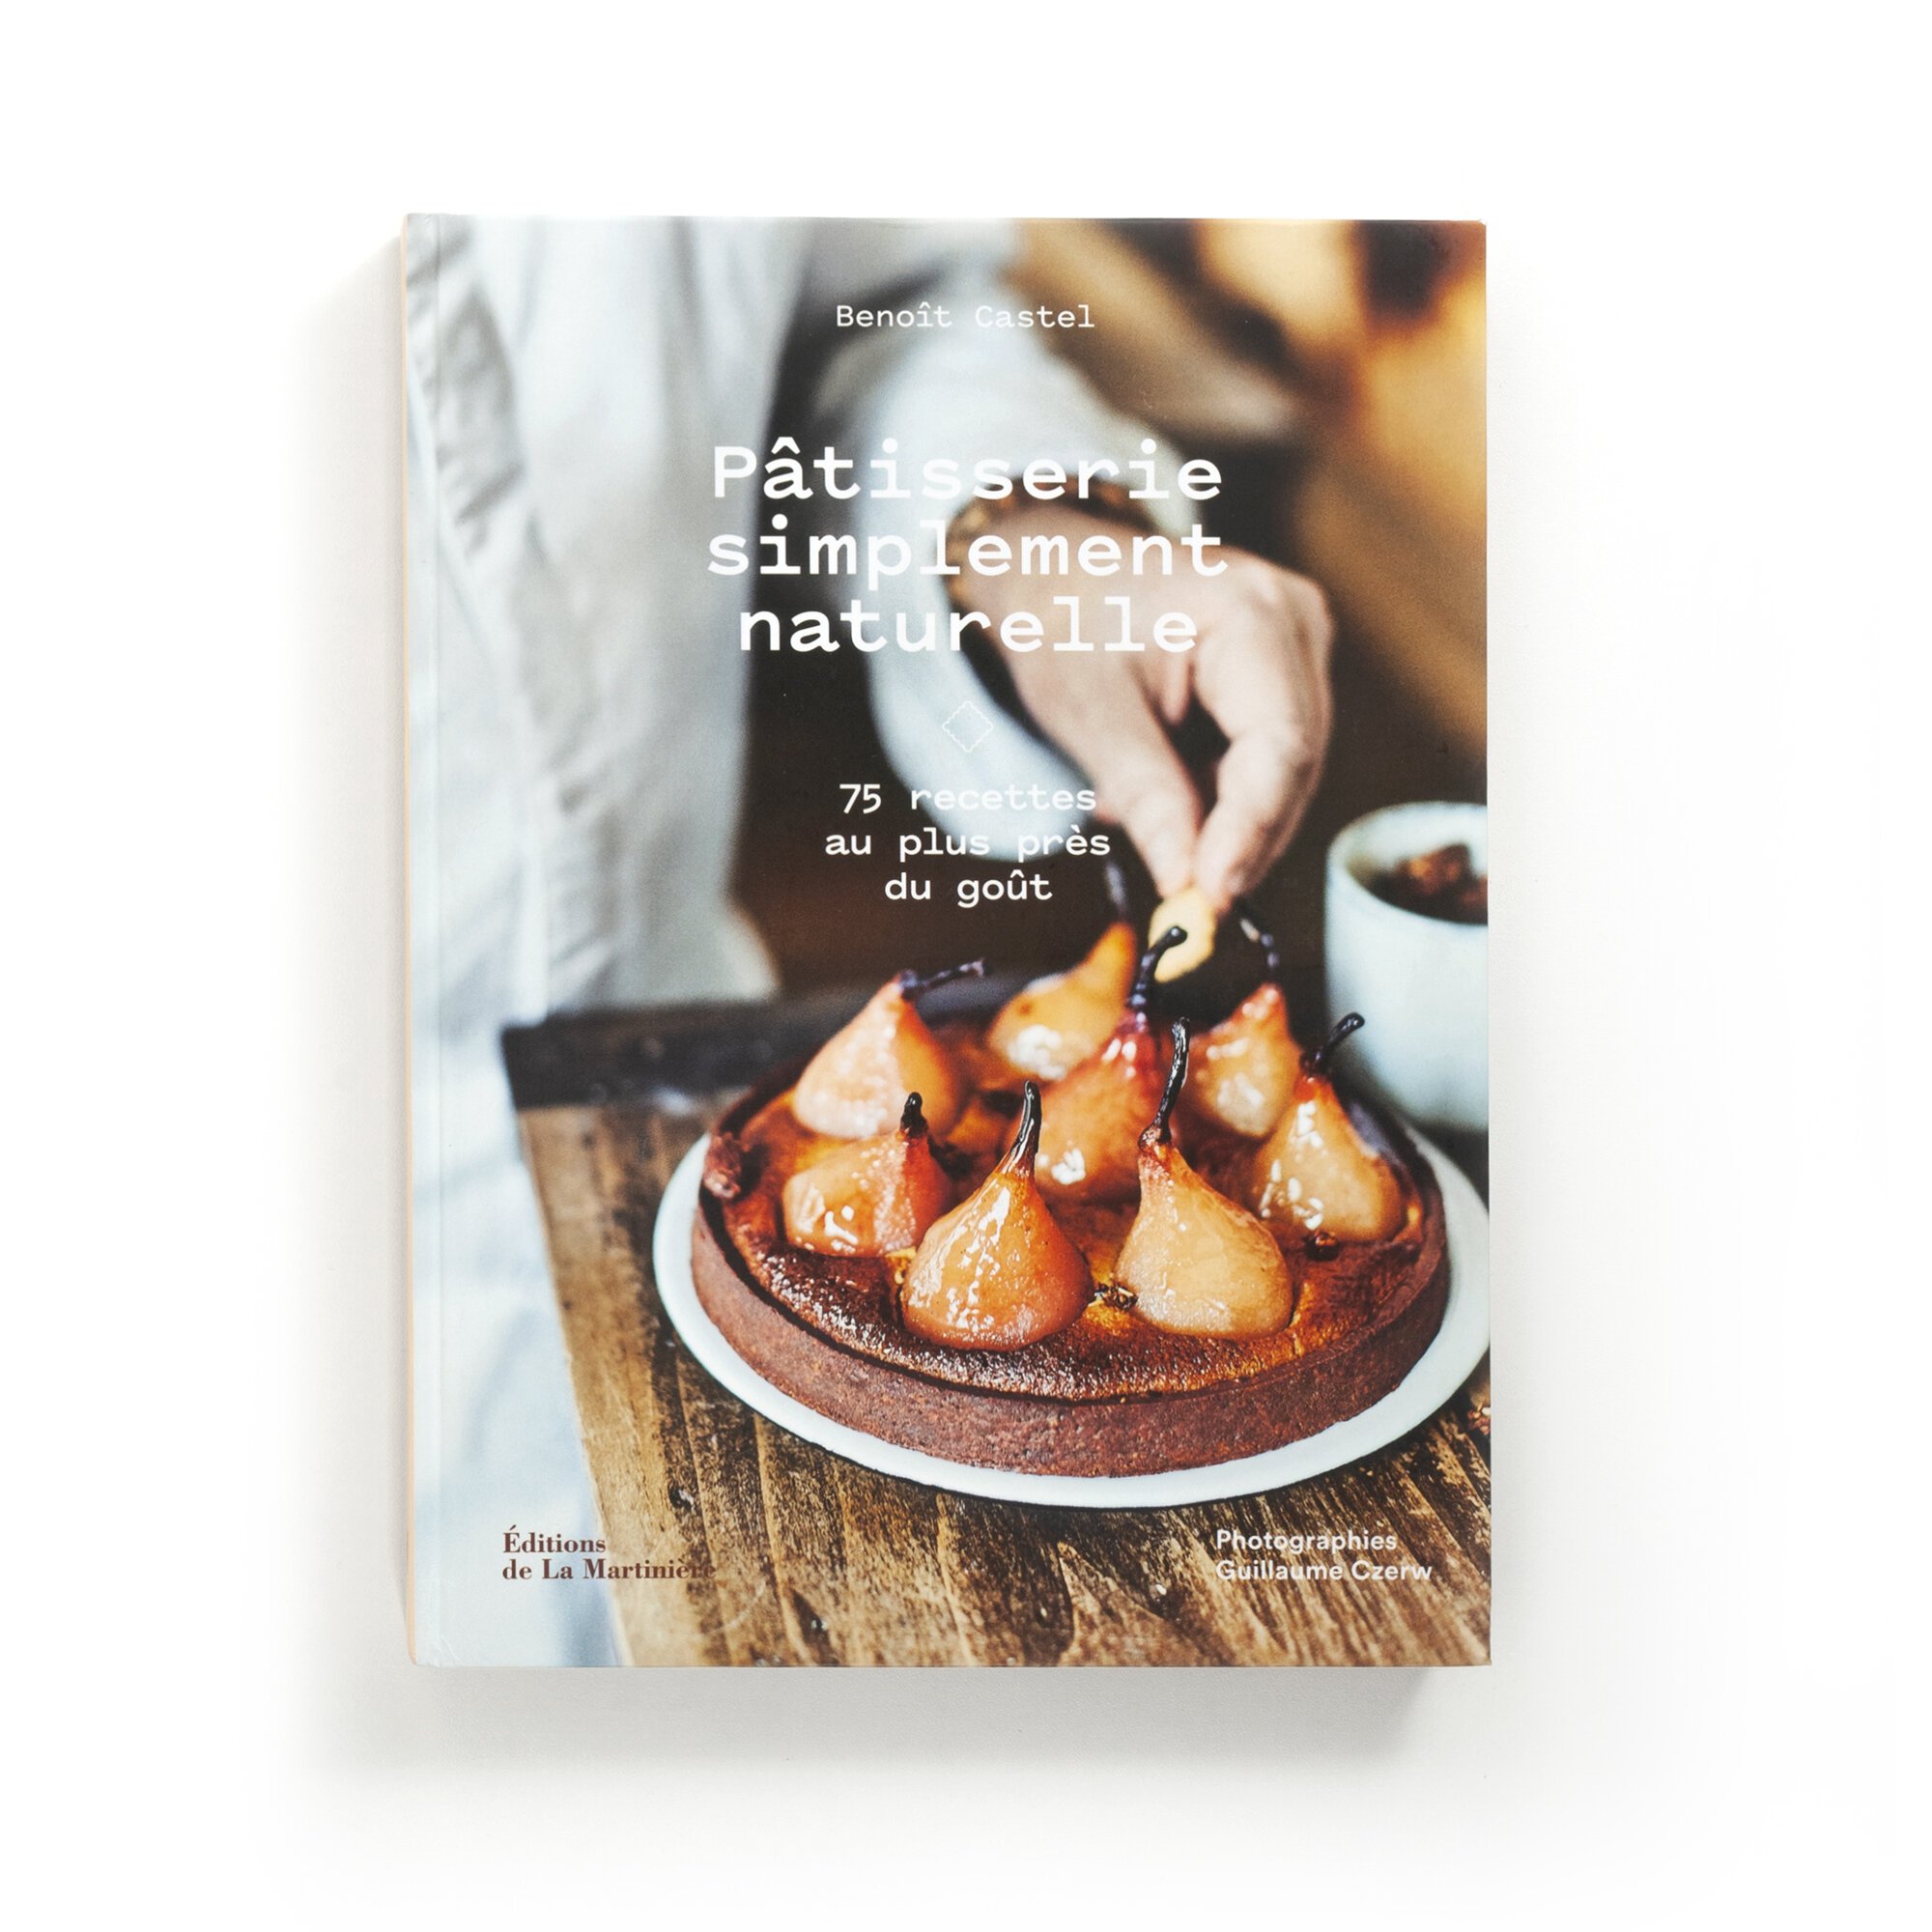   Pâtisserie simplement naturelle  75 recettes au plus près du goût  Benoît Castel  Éditions de La Martinière 120 pages 